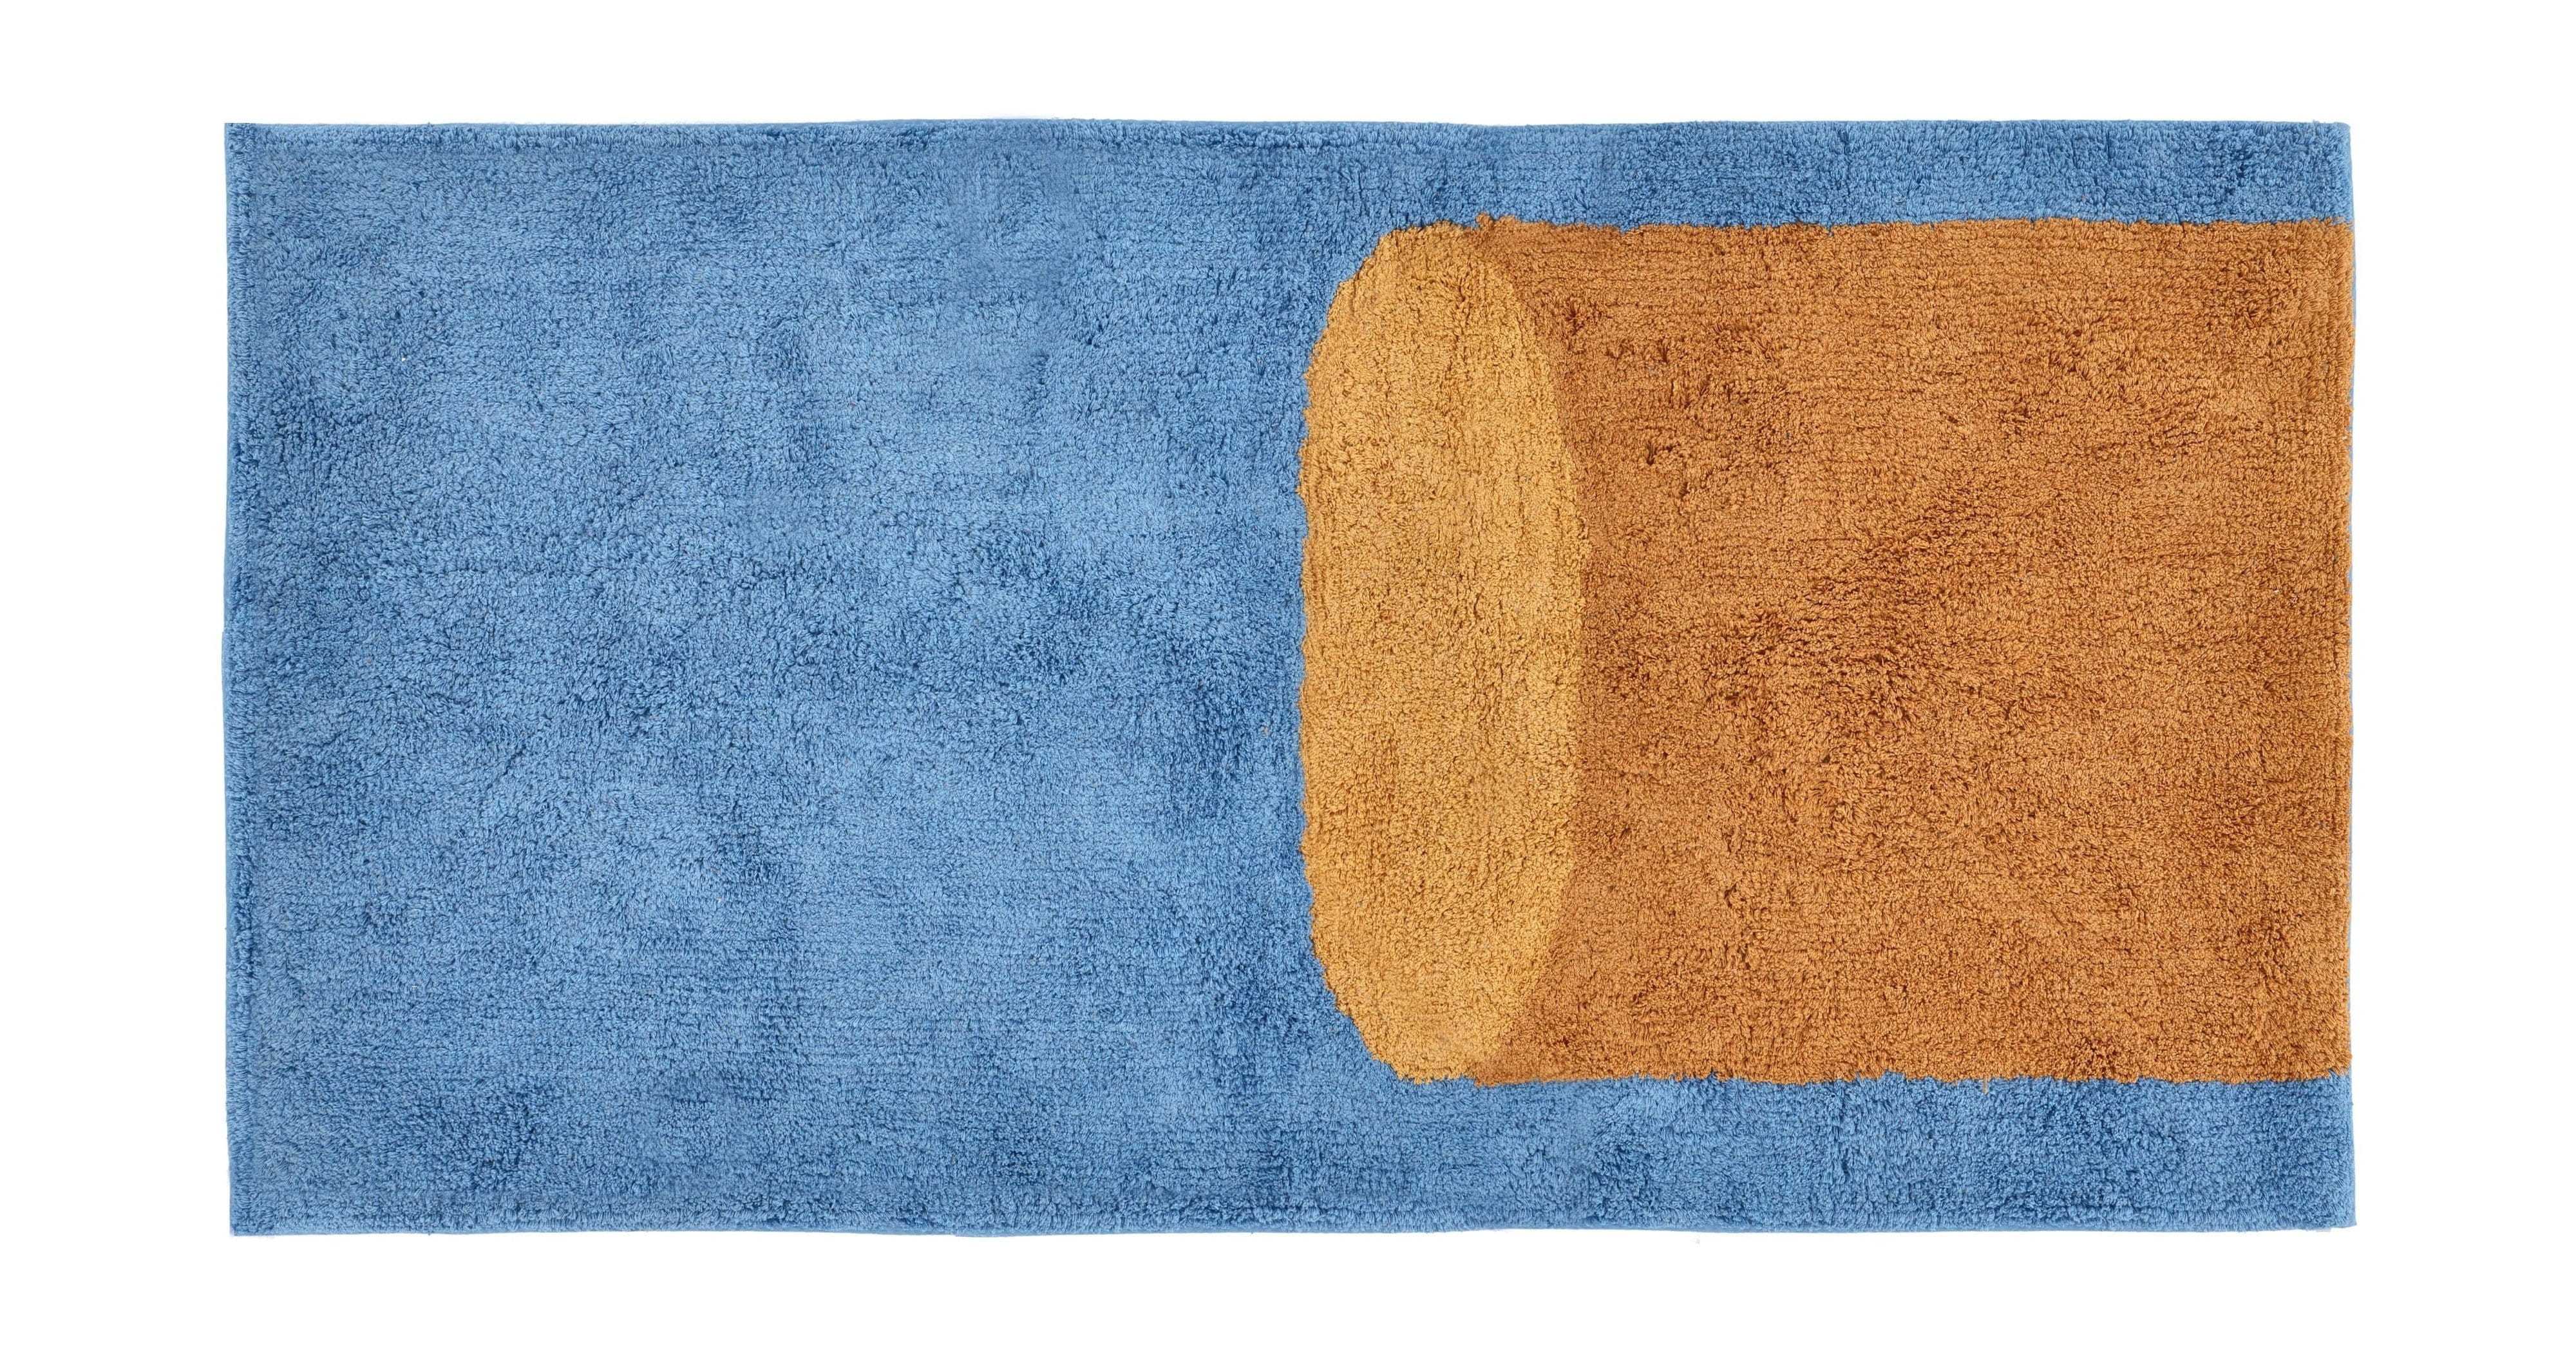 Styly sběru vily všívané koberec 70x70 cm, modrá/hnědá